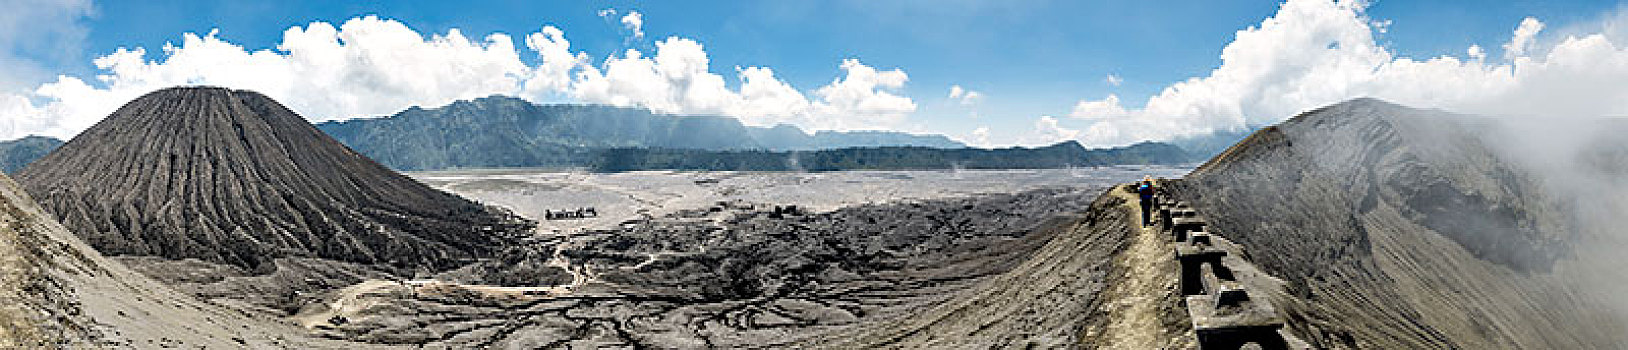 风景,火山口,婆罗摩火山,婆罗莫,国家公园,东方,爪哇,印度尼西亚,亚洲